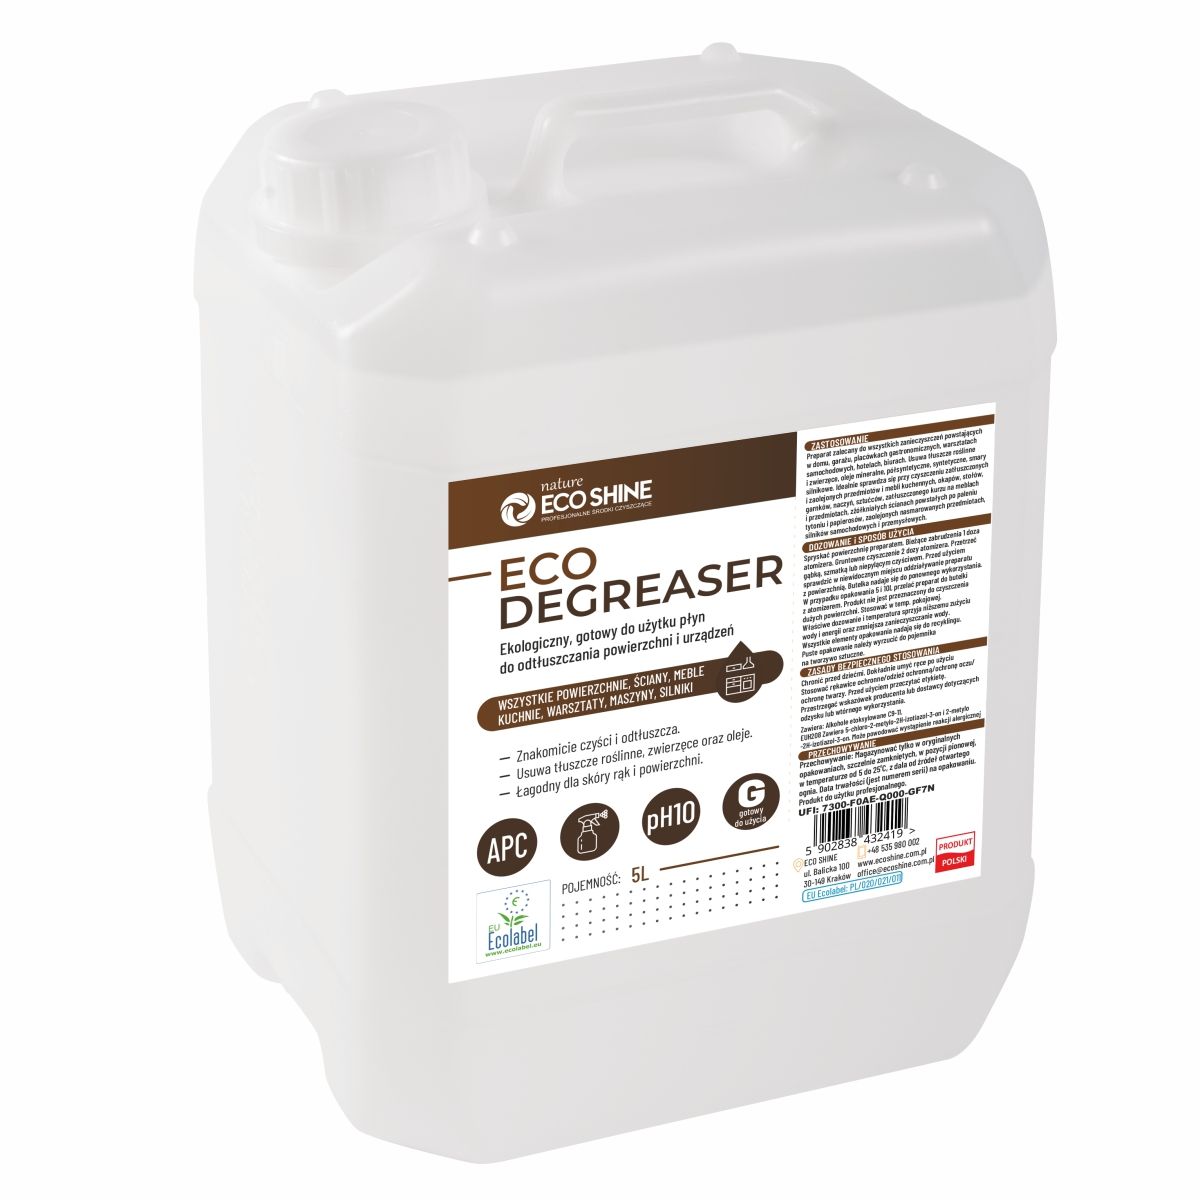 ECO SHINE Eco Degreaser ekologiczny płyn do odtłuszczania urządzeń 5L